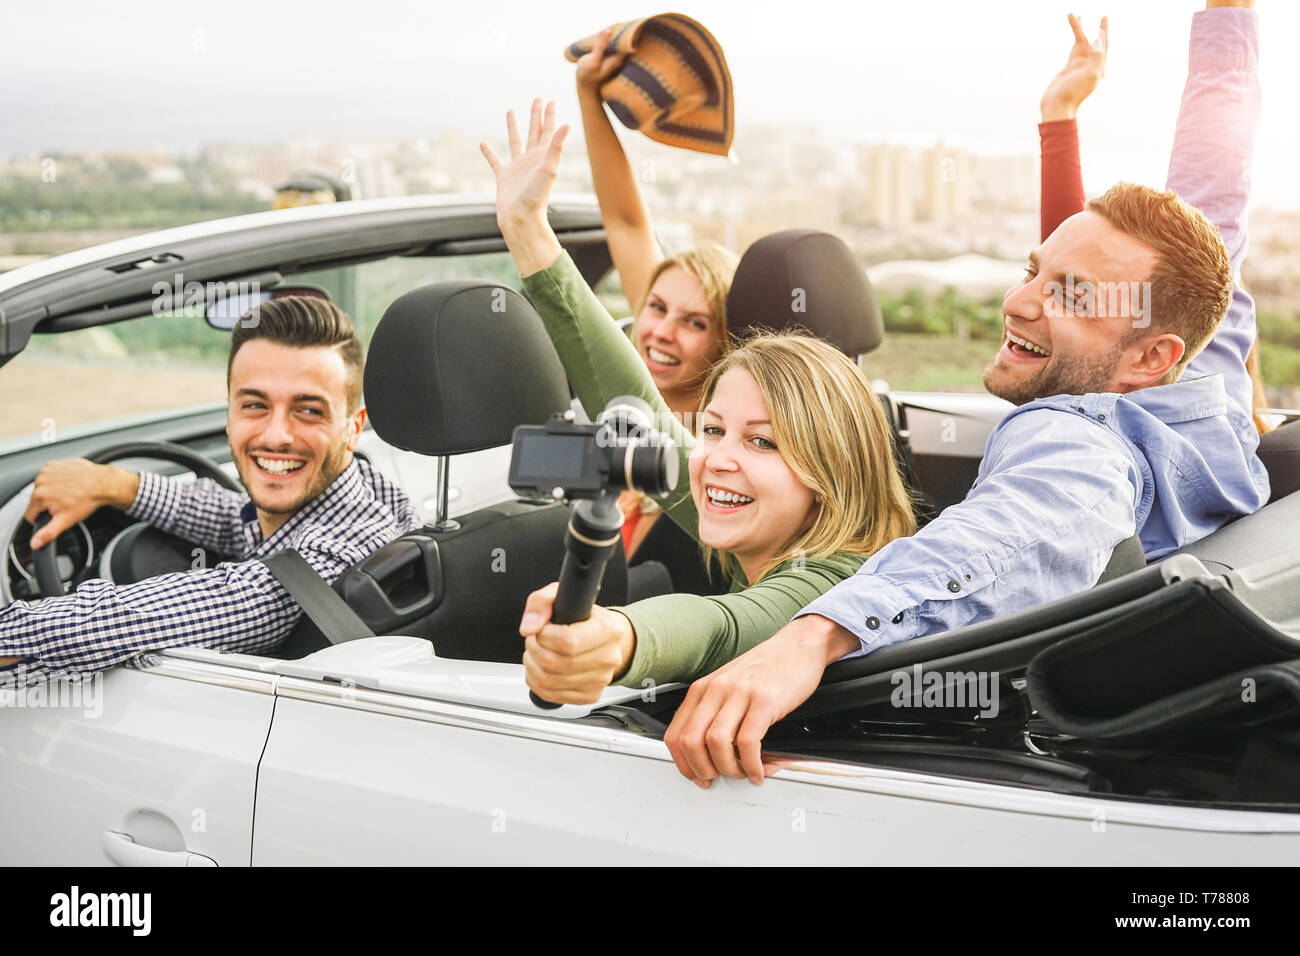 Gerne Freunde Aufnehmen von Fotos mit selfie stick Kamera im Cabrio im Urlaub - junge Menschen, die Spaß im Cabriolet Auto während Ihres Ausflugs Stockfoto